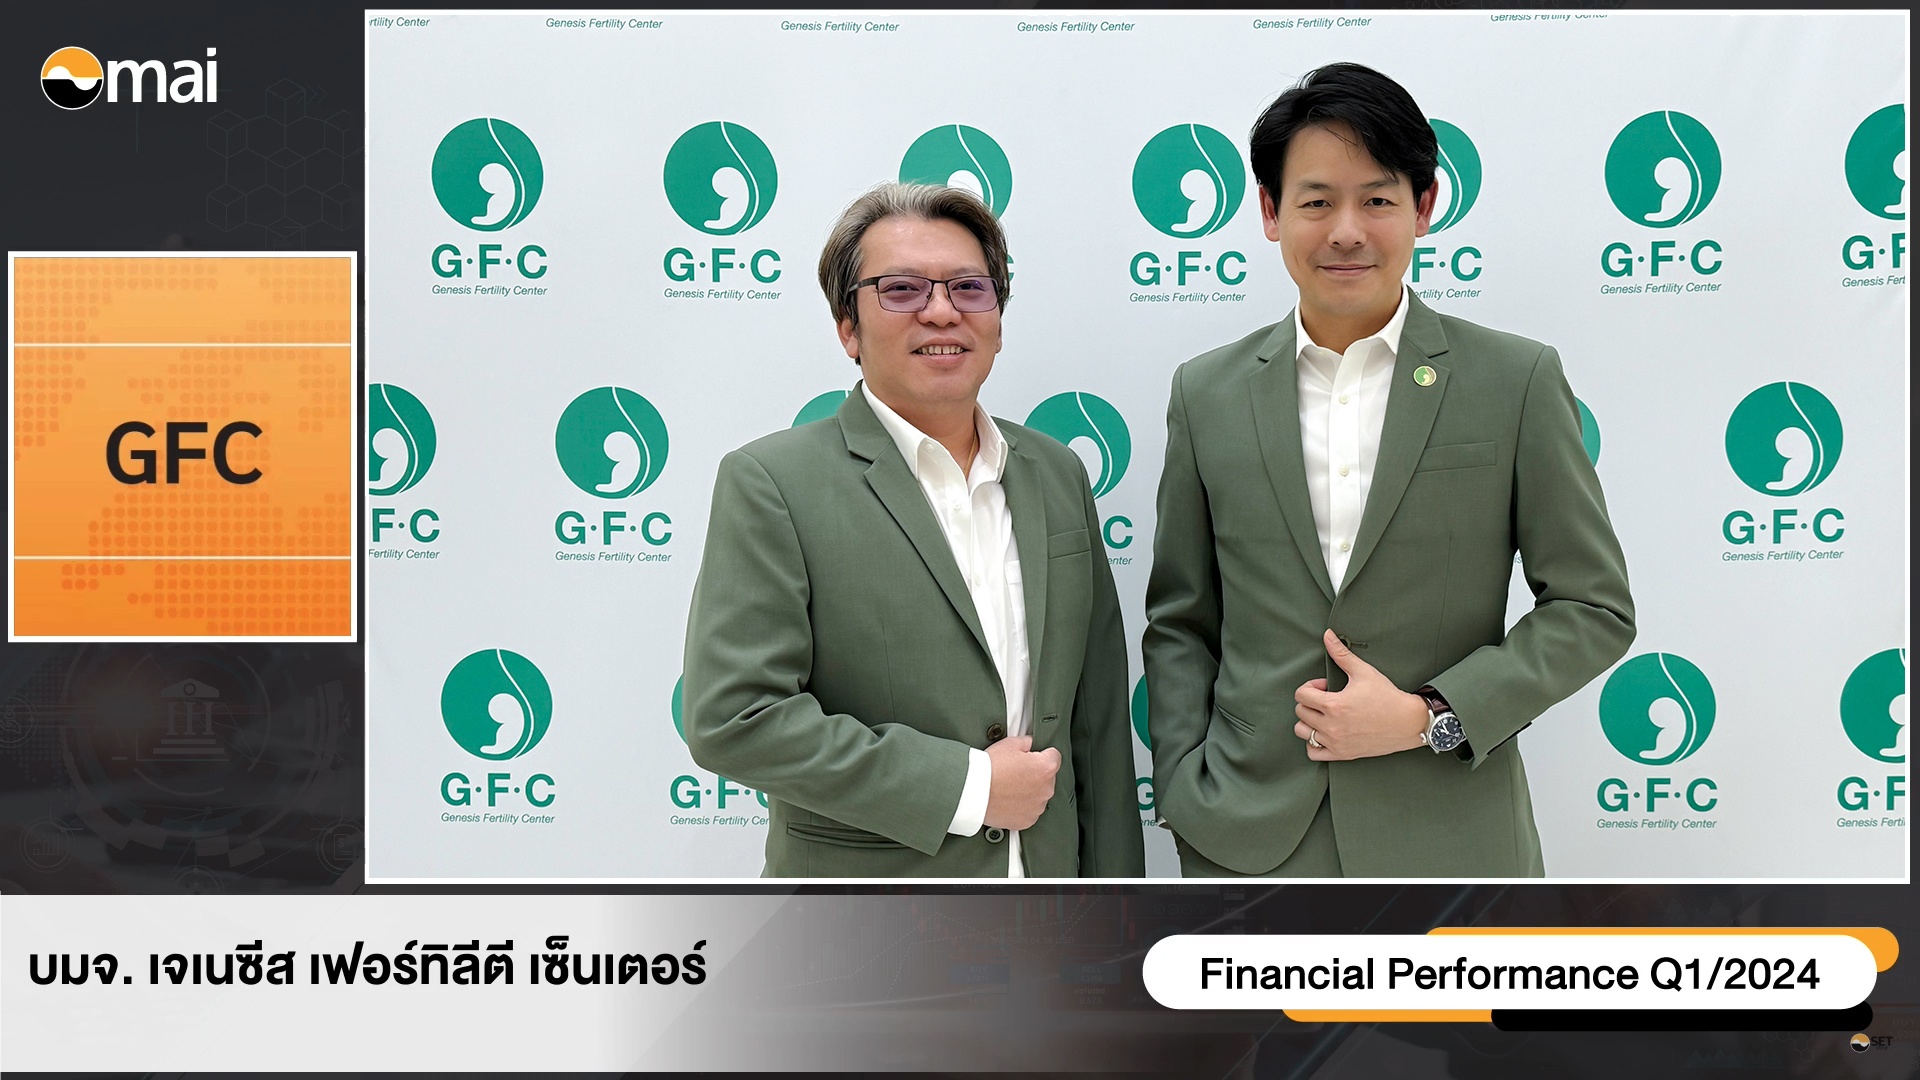 GFC รุกเปิด 2 สาขาใหม่ Q3 รองรับผู้มีบุตรยากไทย-ต่างชาติ